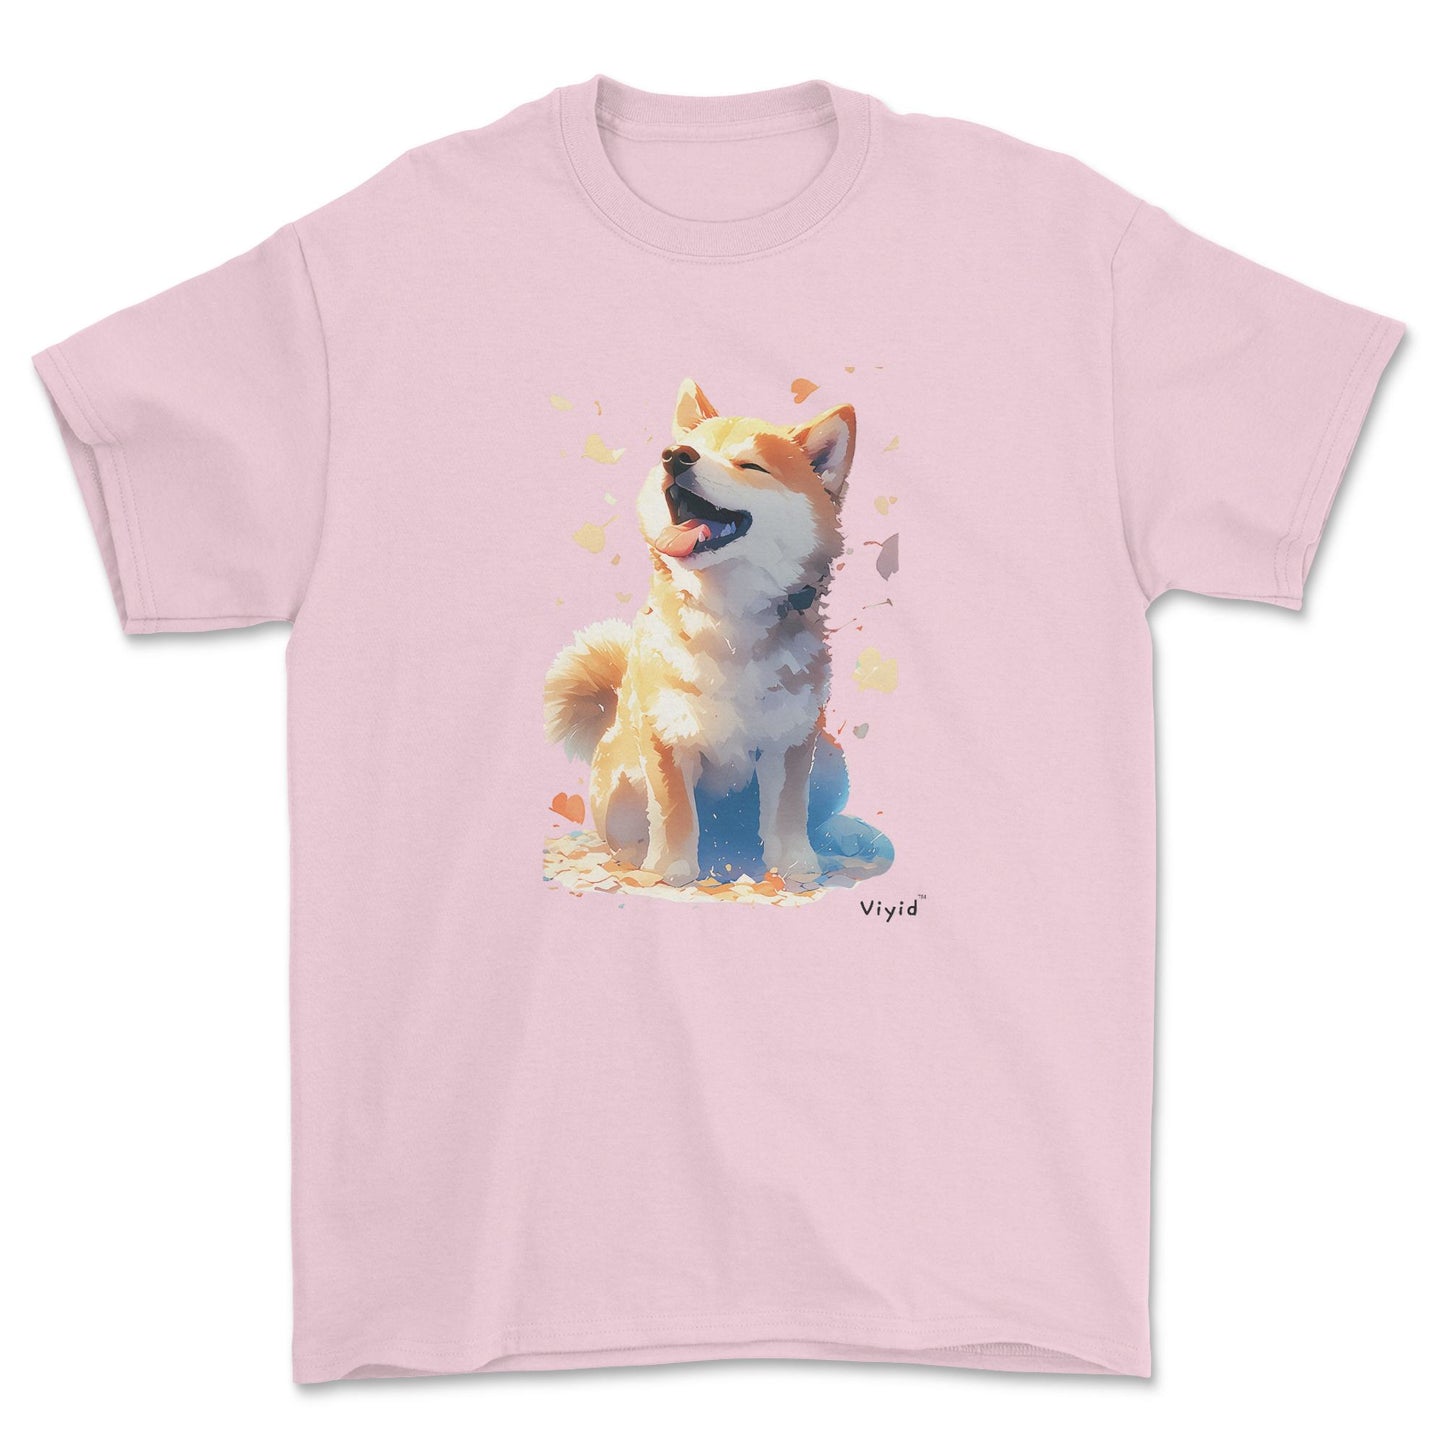 Japanese Shiba Inu adult t-shirt light pink